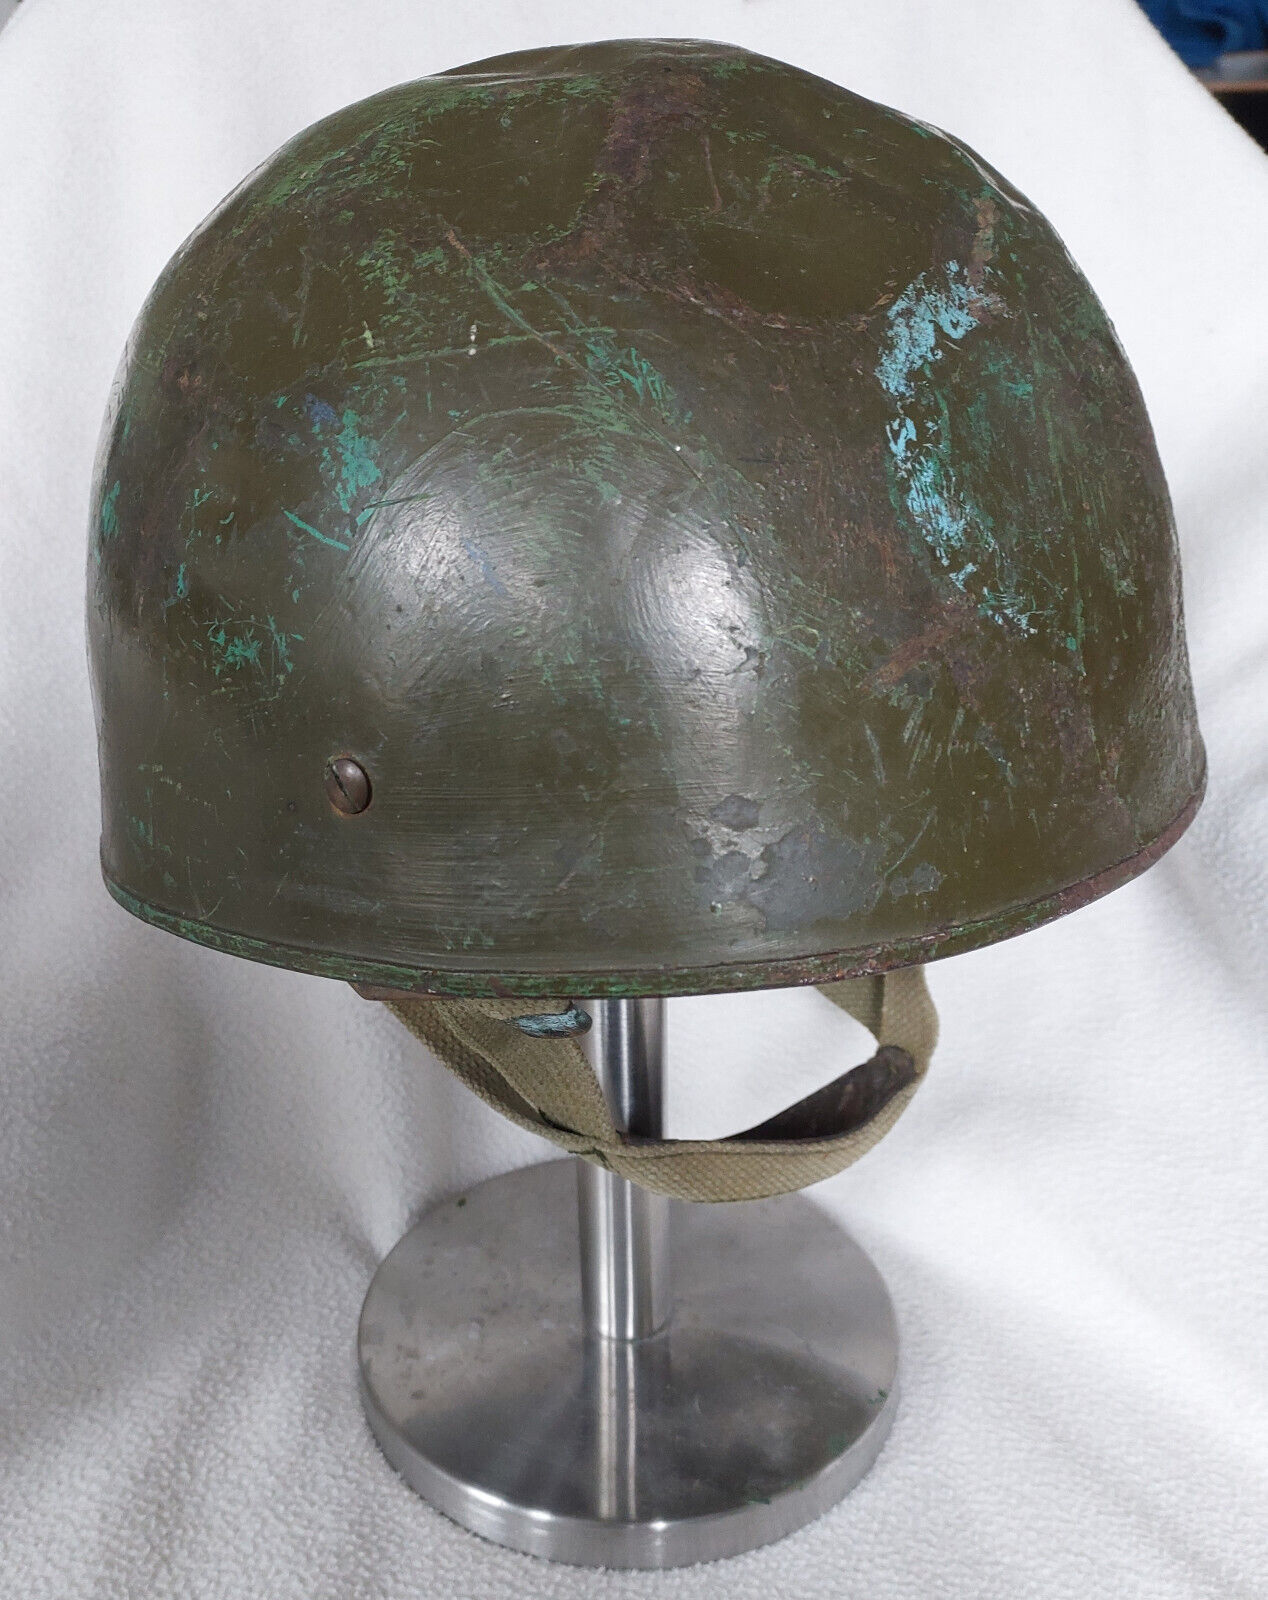 Belgian mk2 paratrooper helmet